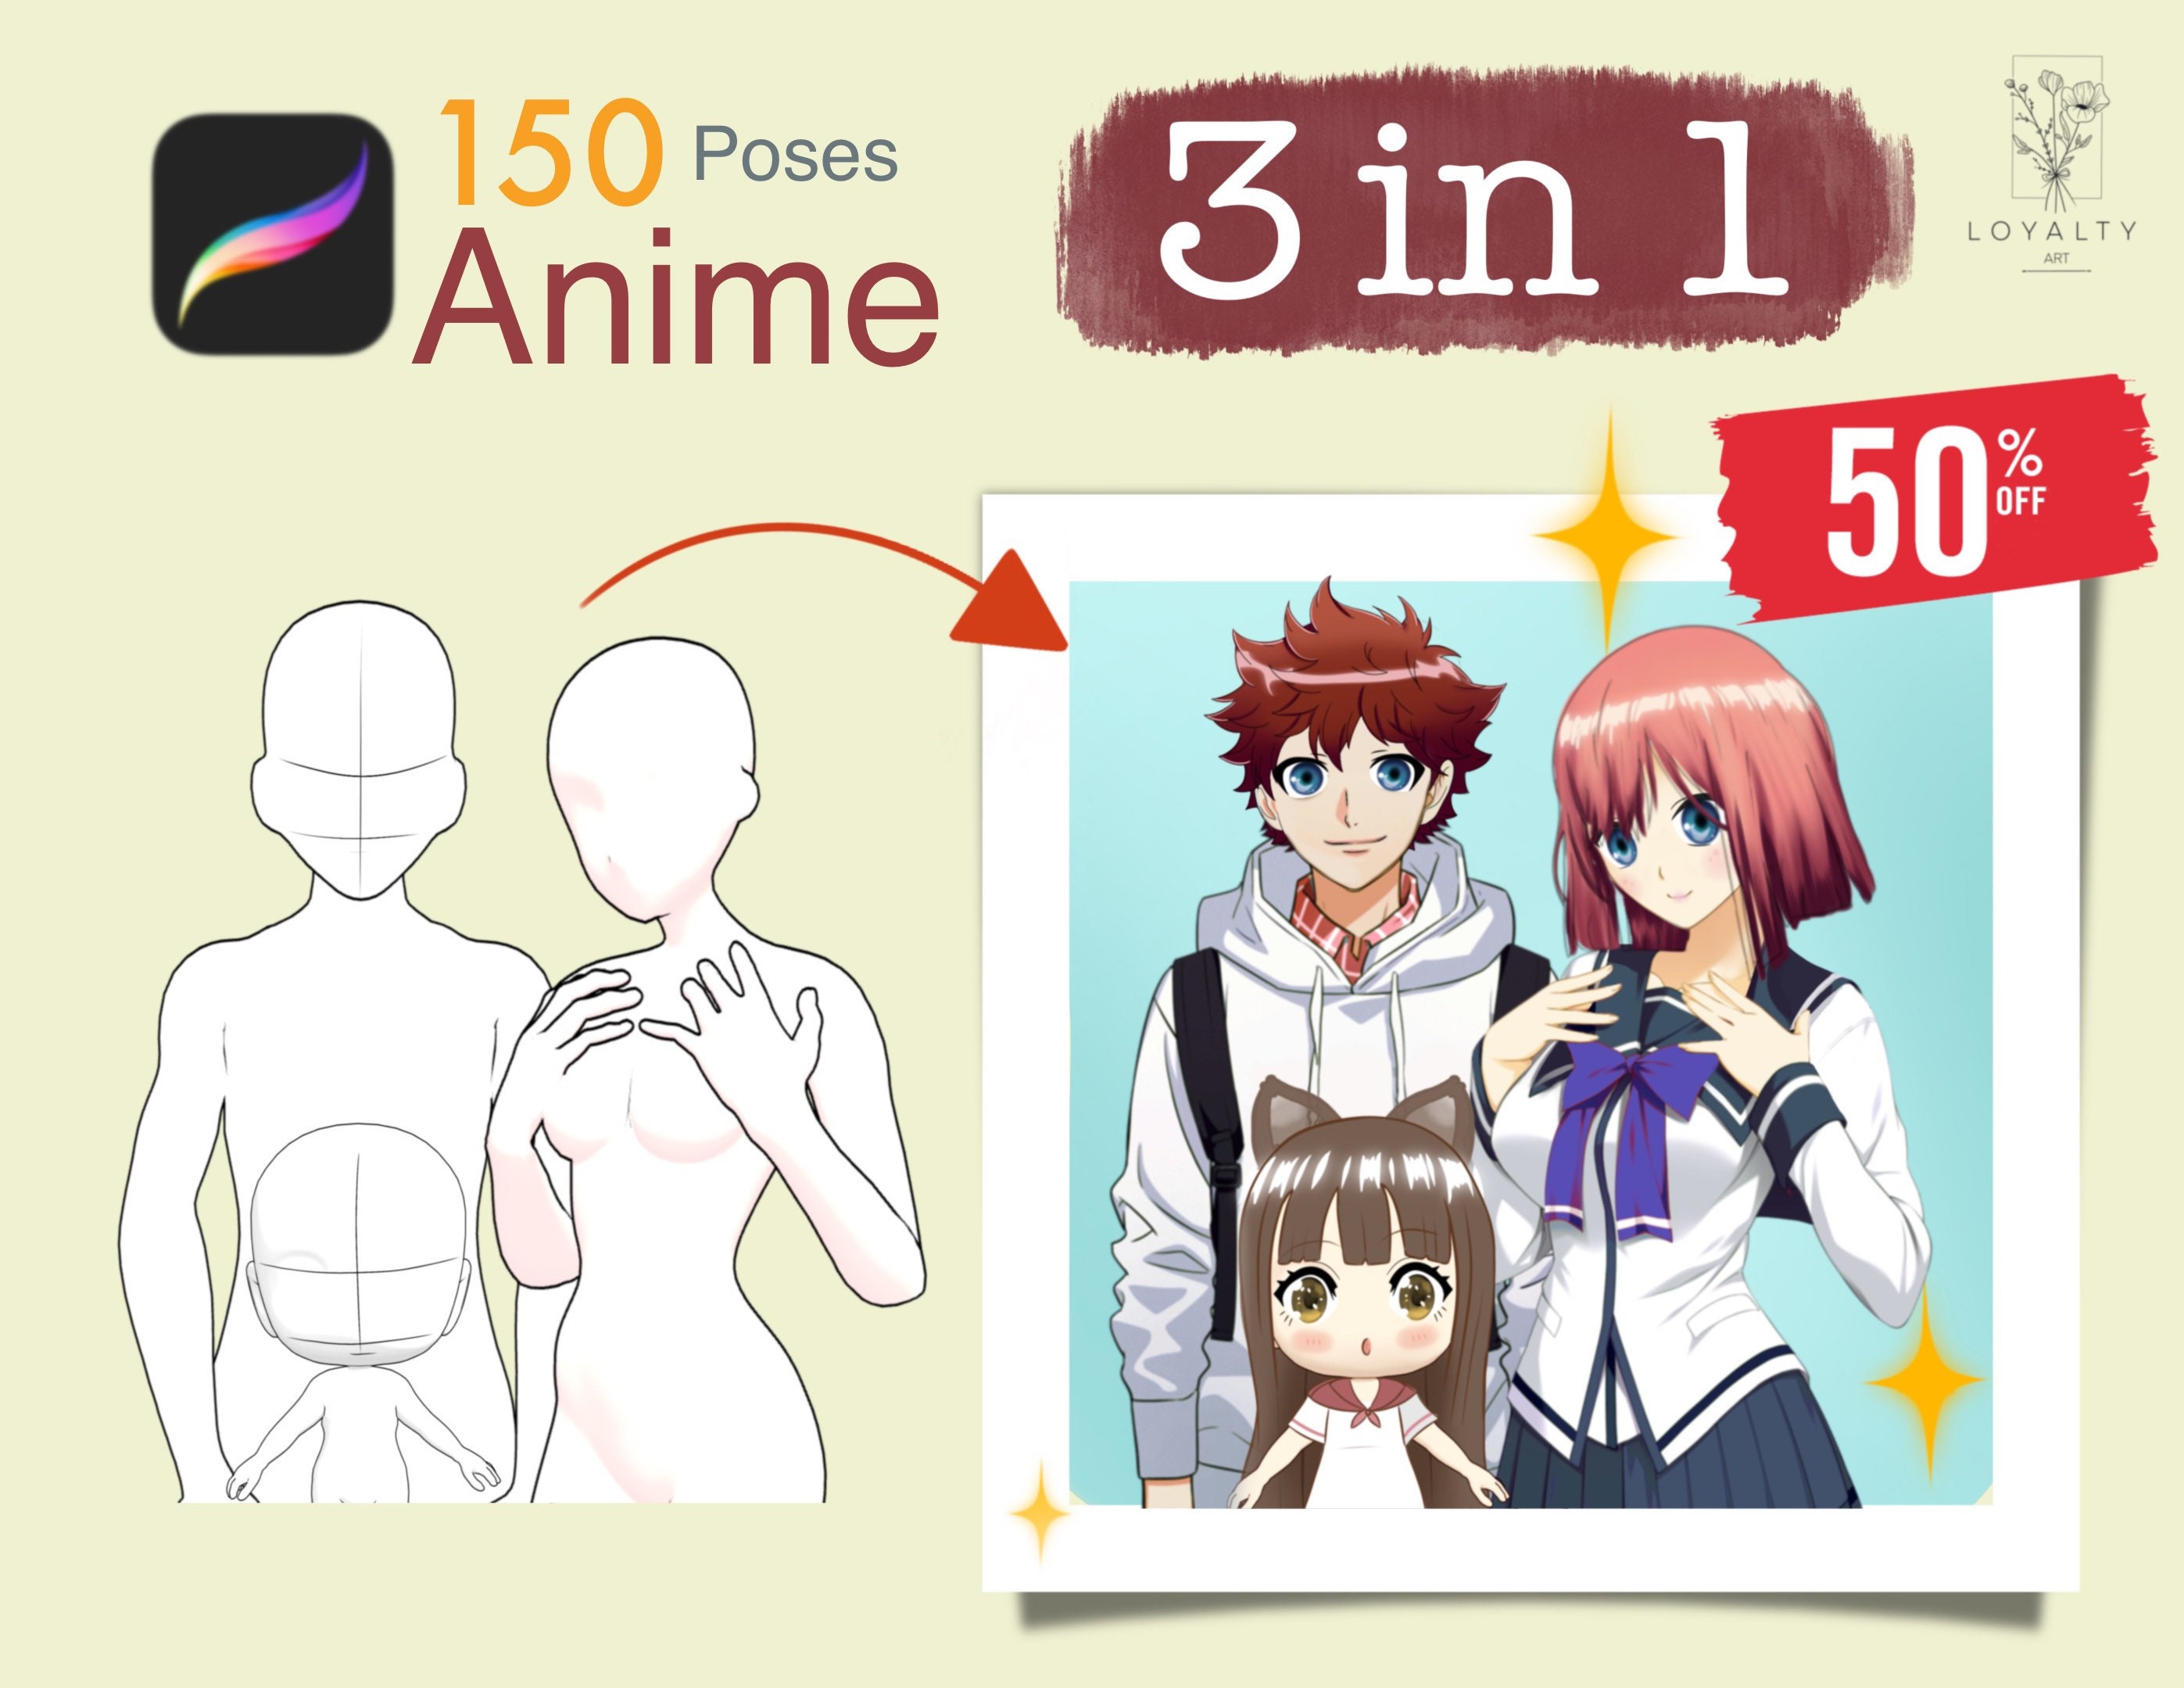 150 poses de anime, hombre, mujer, chibi, poses de manga Figuras